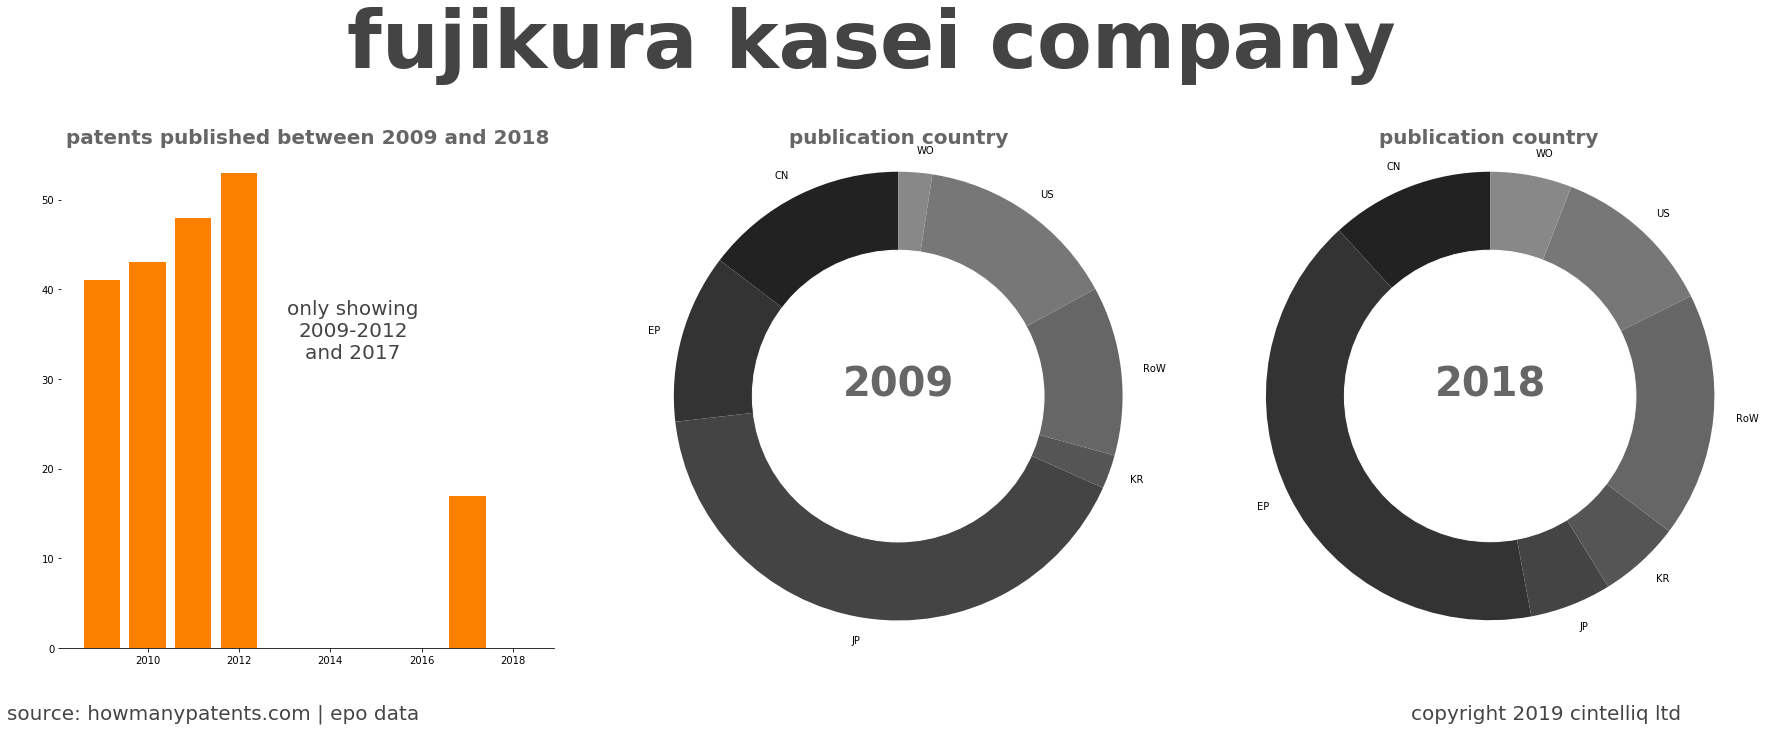 summary of patents for Fujikura Kasei Company